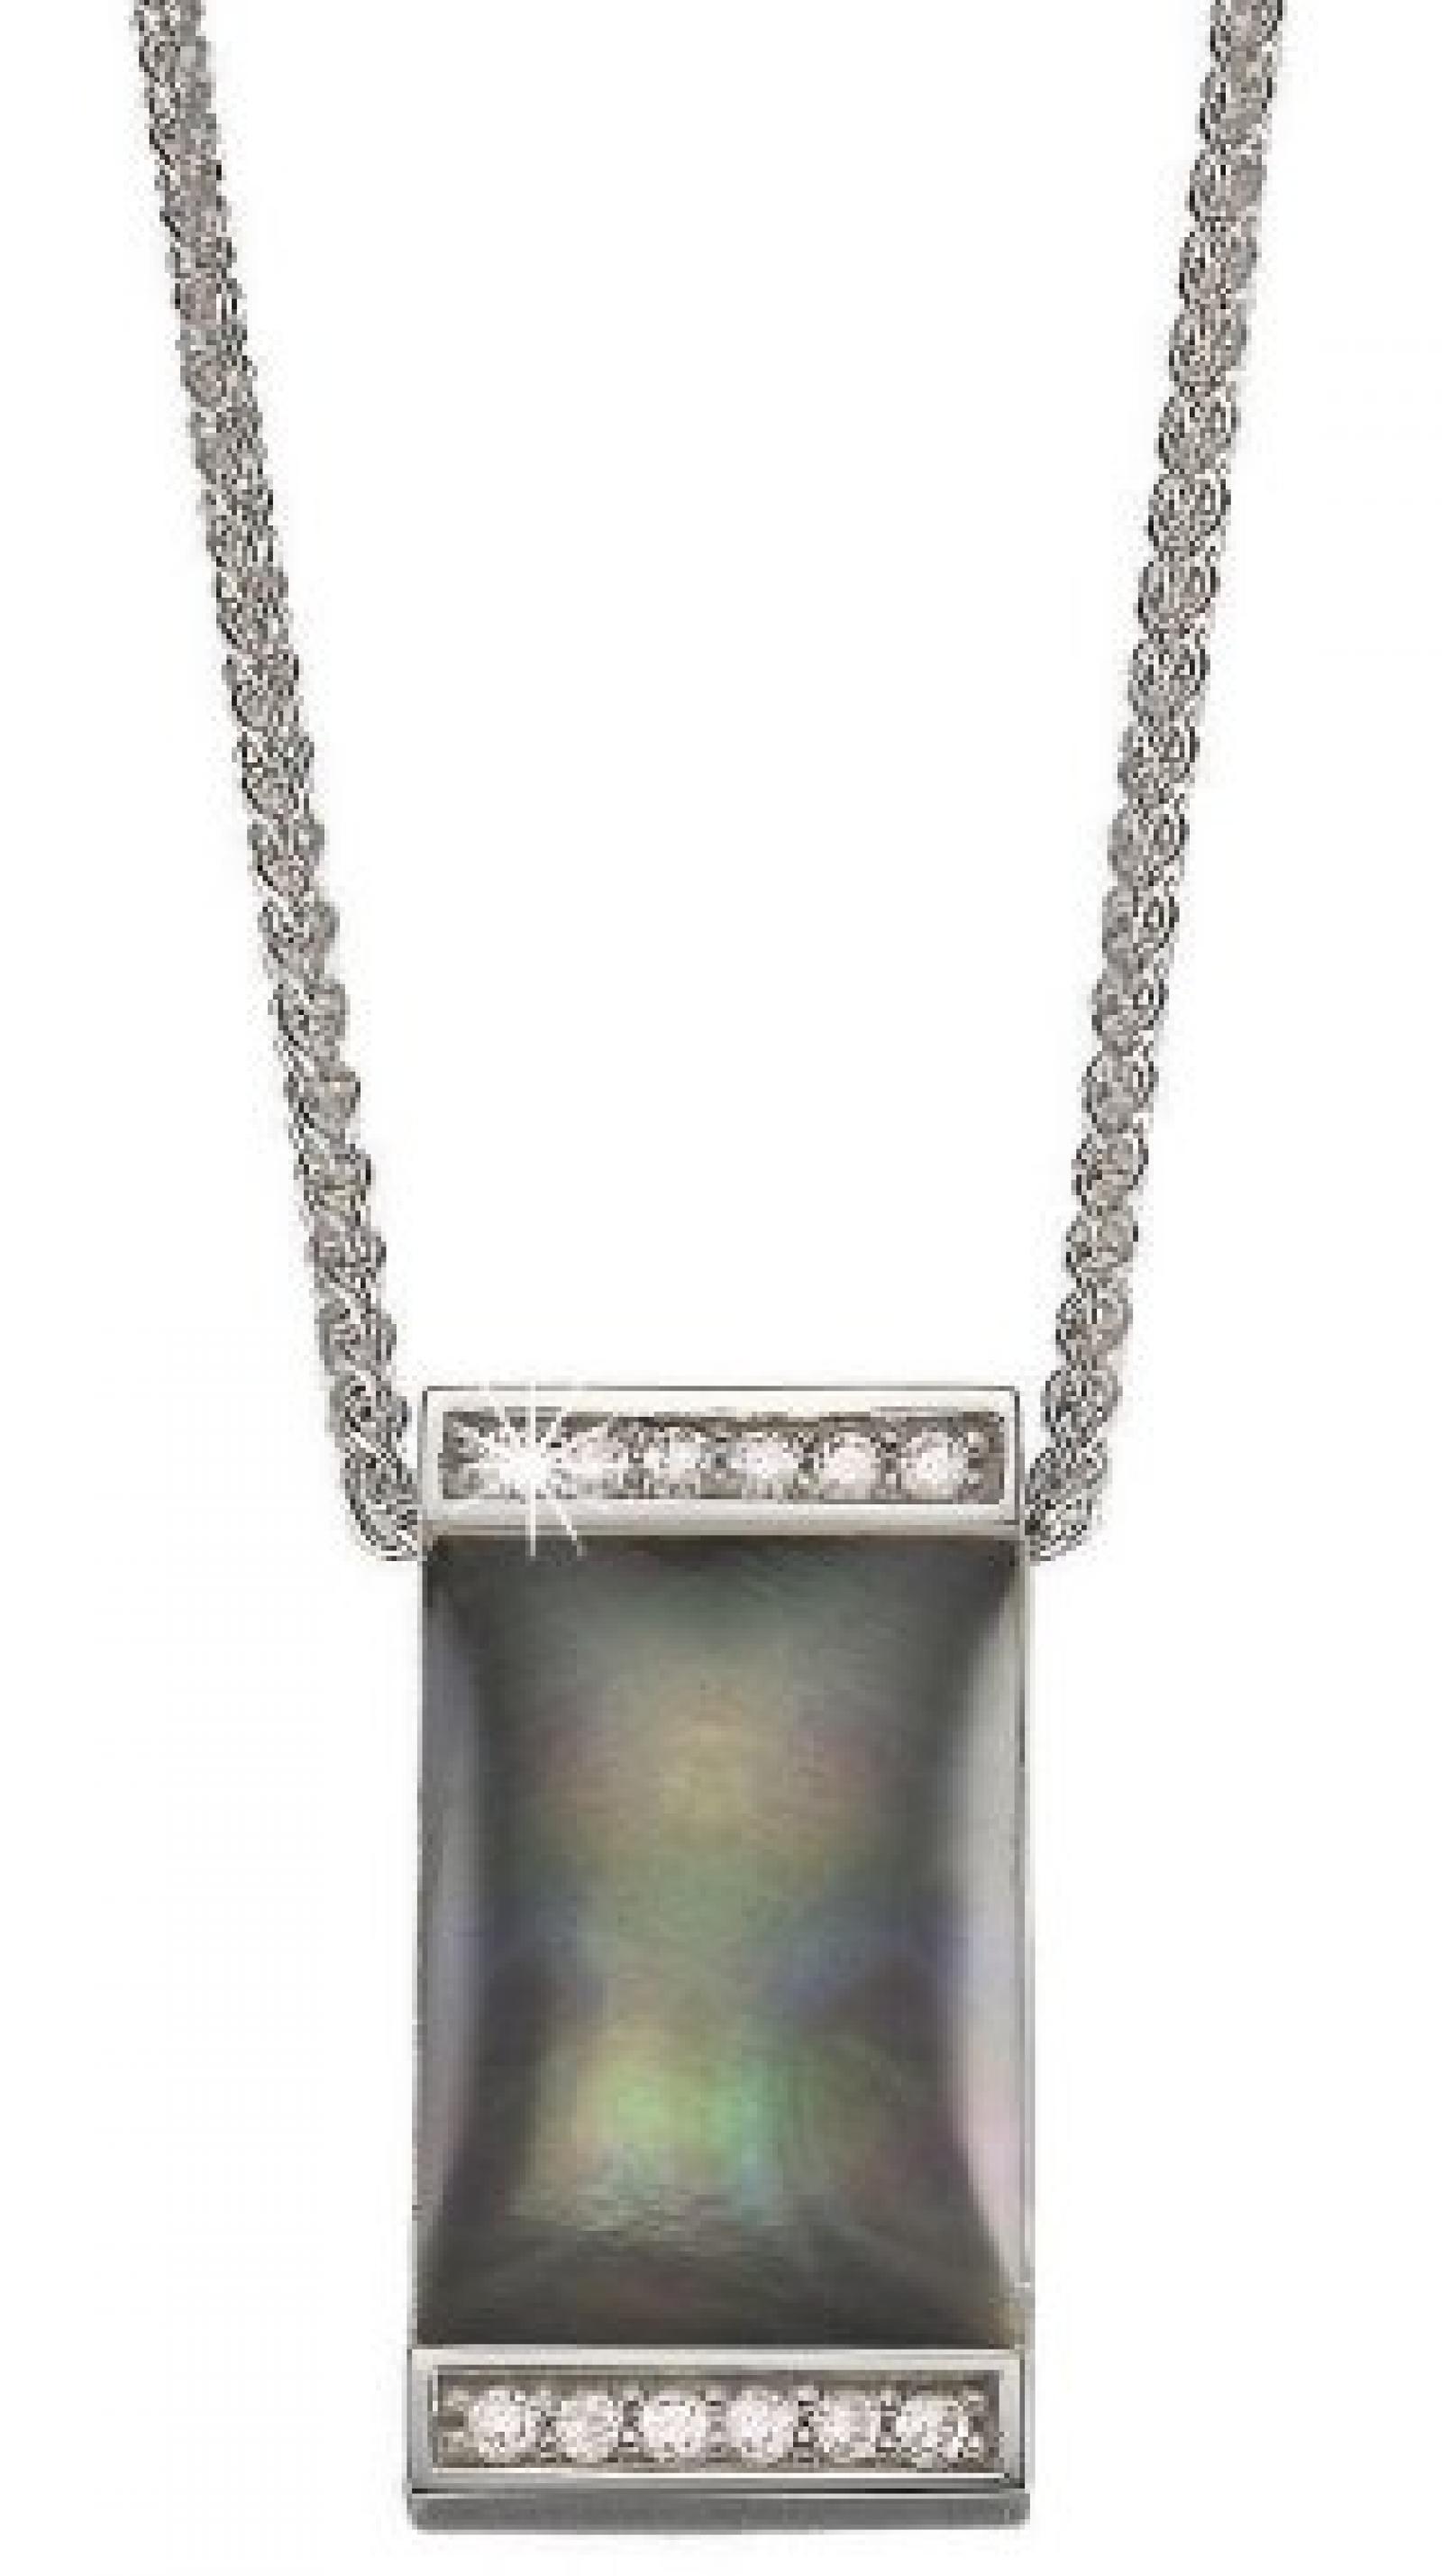 Pierre Cardin Damen Halskette 925 Sterling Silber rhodiniert Kristall Zirkonia Crépuscule 42 cm weiß PCNL90381A420 